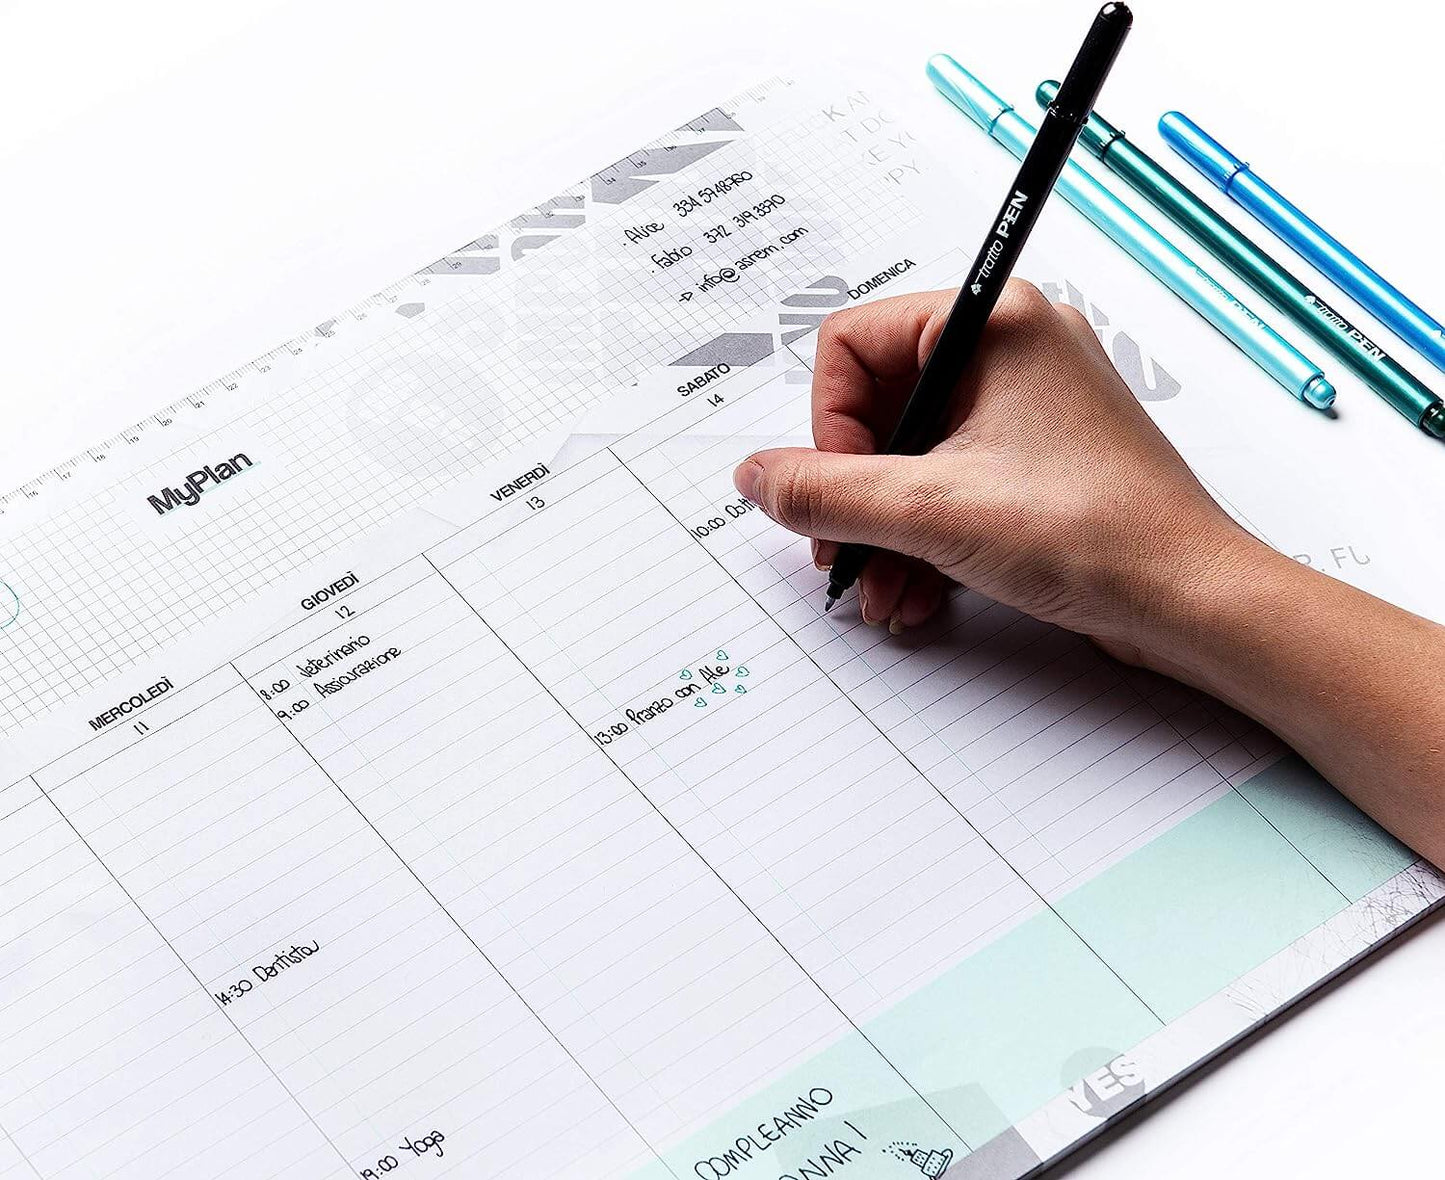 Planner Settimanale da Tavolo - Agenda per appuntamenti ed impegni della settimana